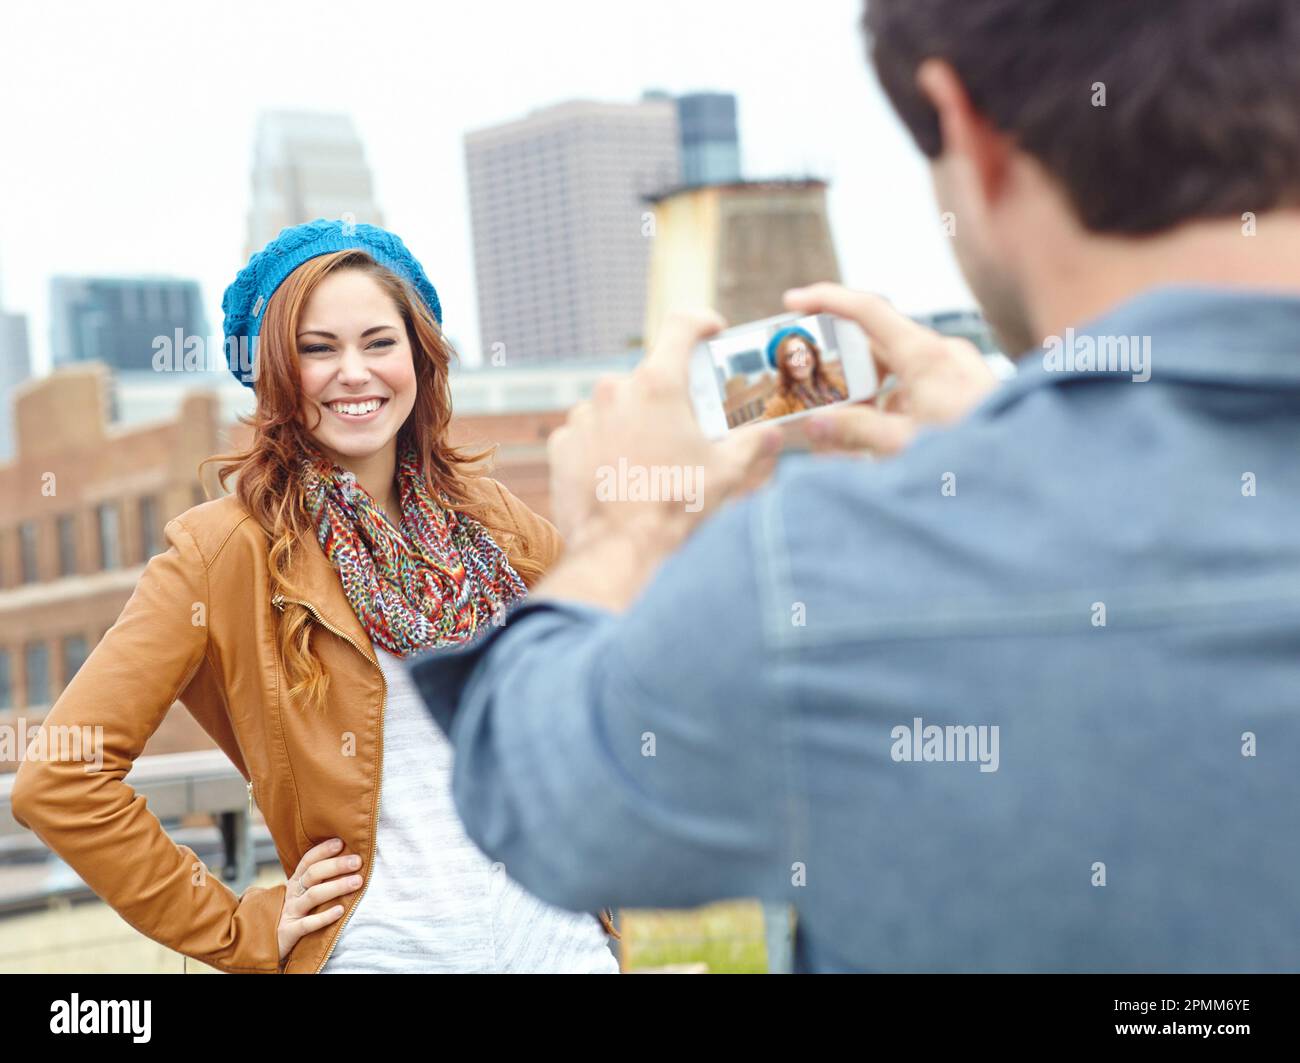 Lächeln. Eine attraktive junge Frau posiert, während ihr Freund ein Foto macht. Stockfoto